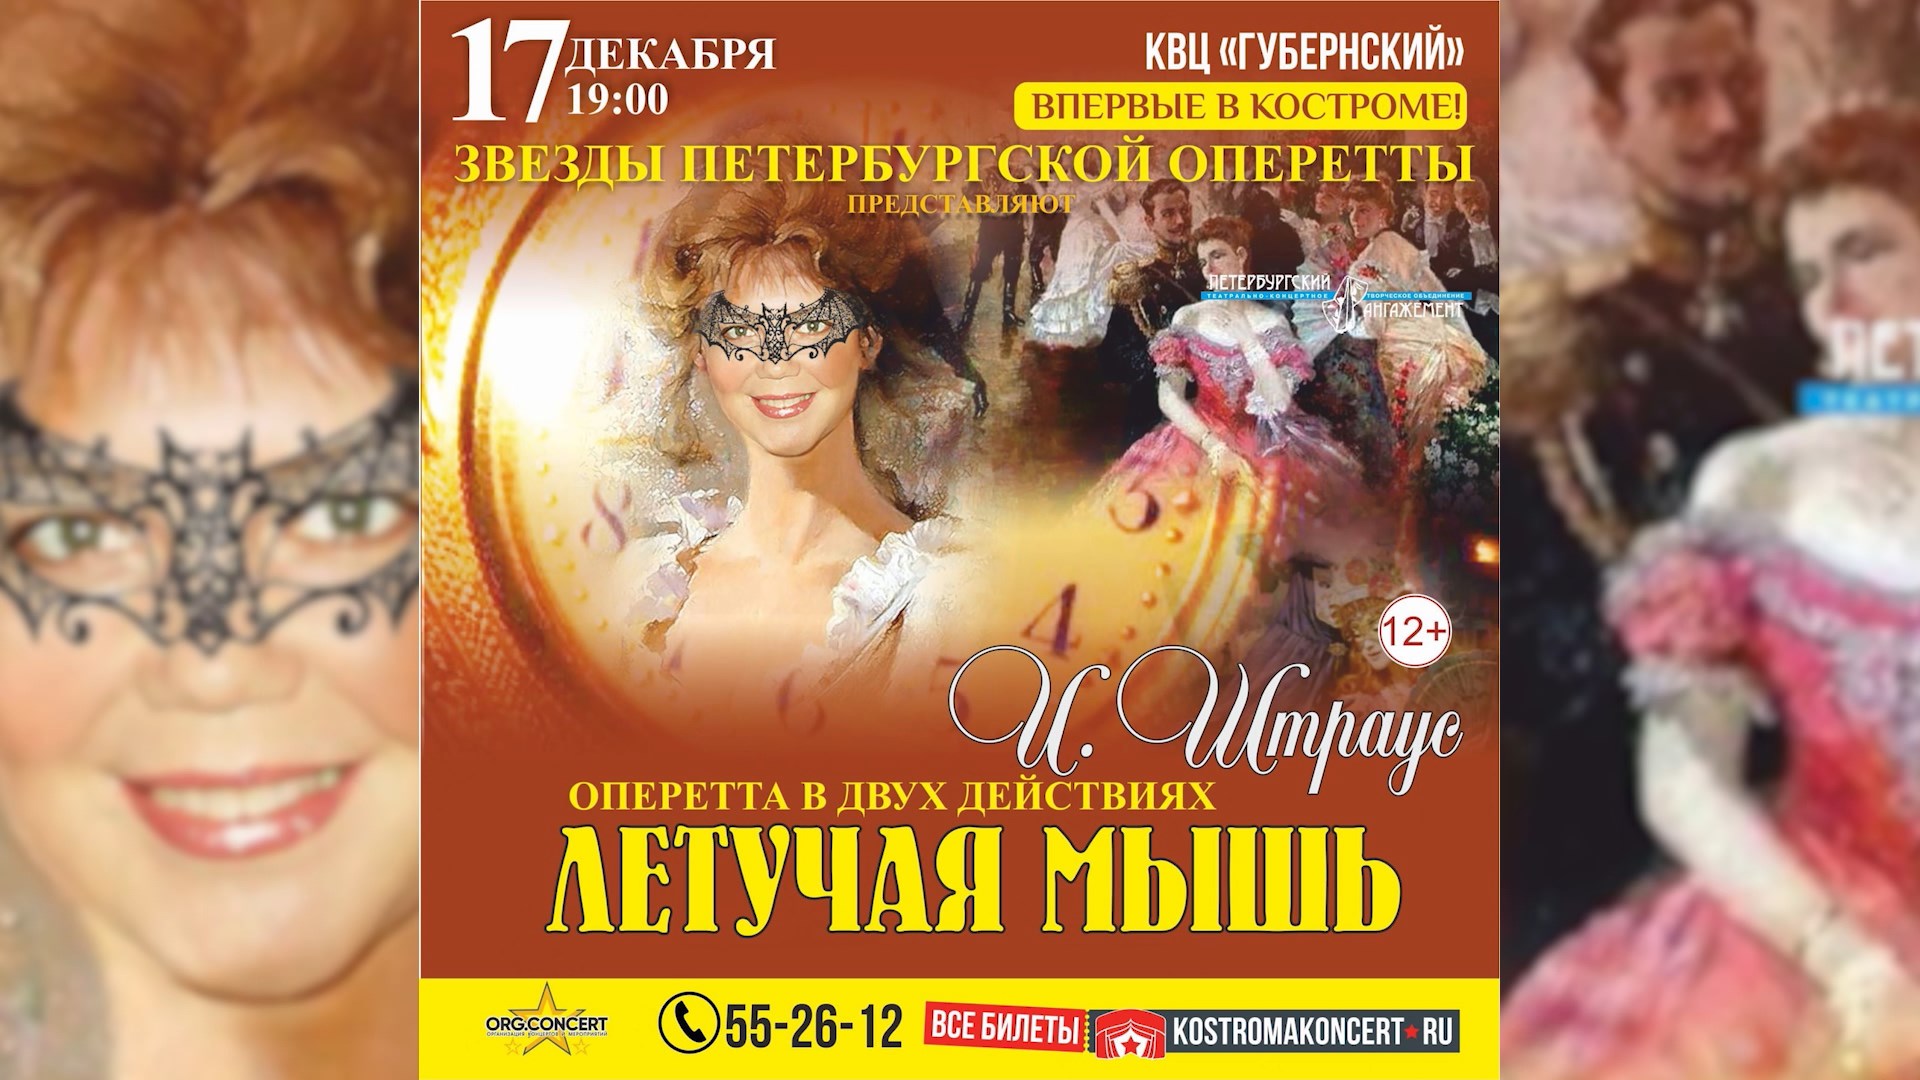 Звезды петербургской оперетты представят в Костроме «Летучую мышь» Штрауса